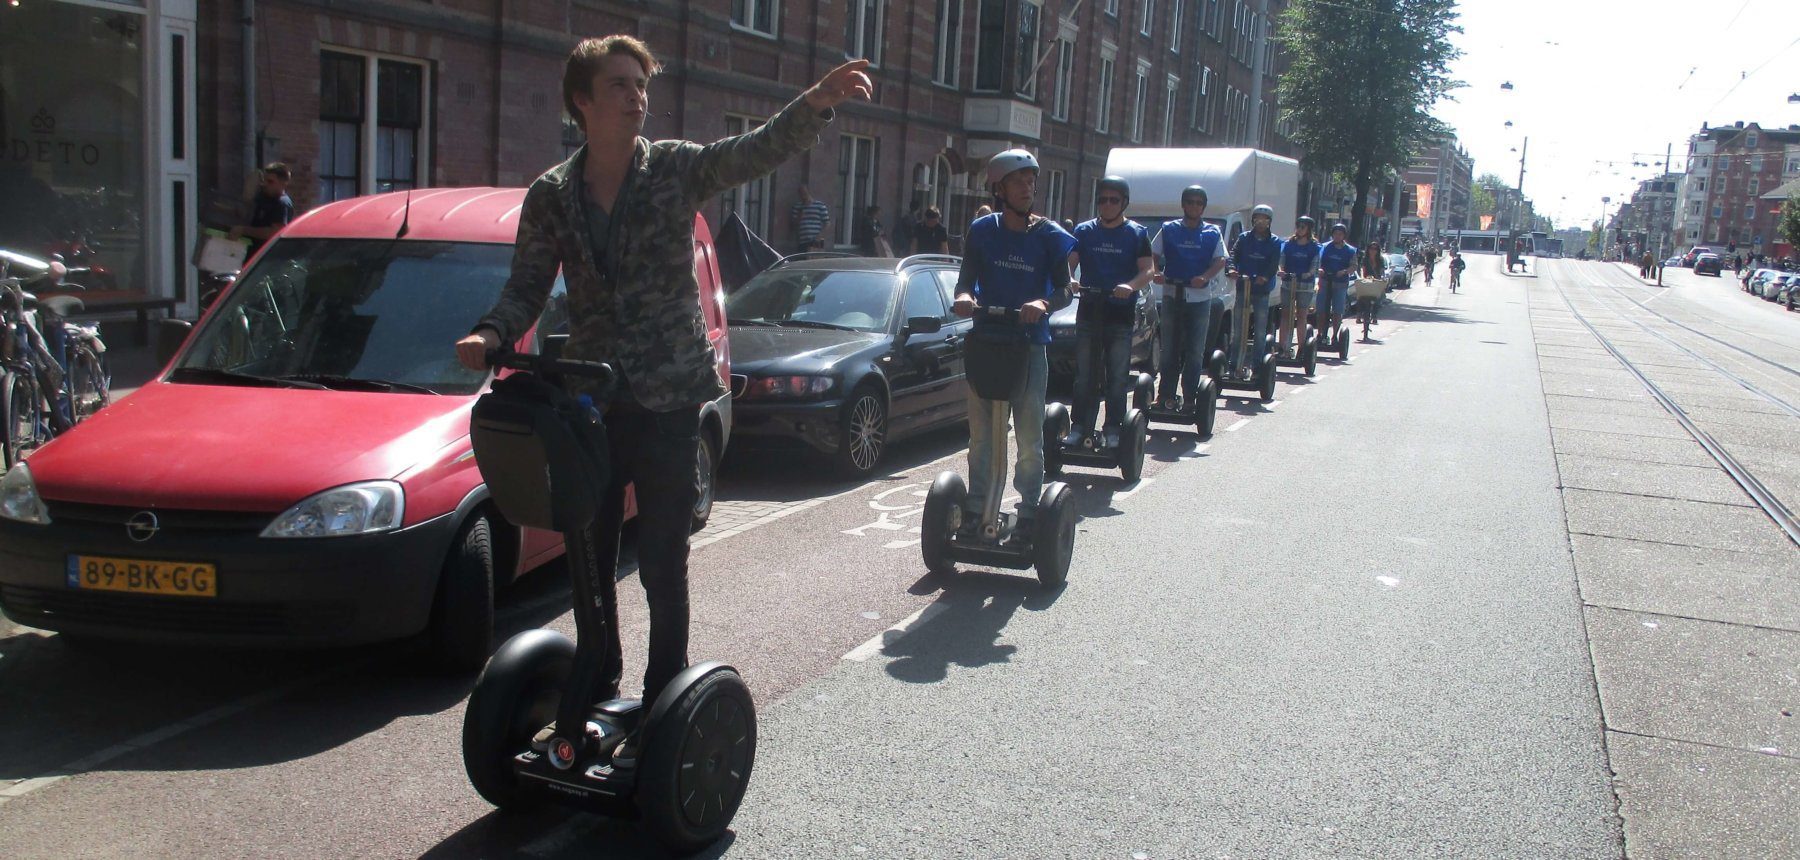 Segway City Tours Amsterdam gebruikt AXIWI voor gastvrije en veilige city tour